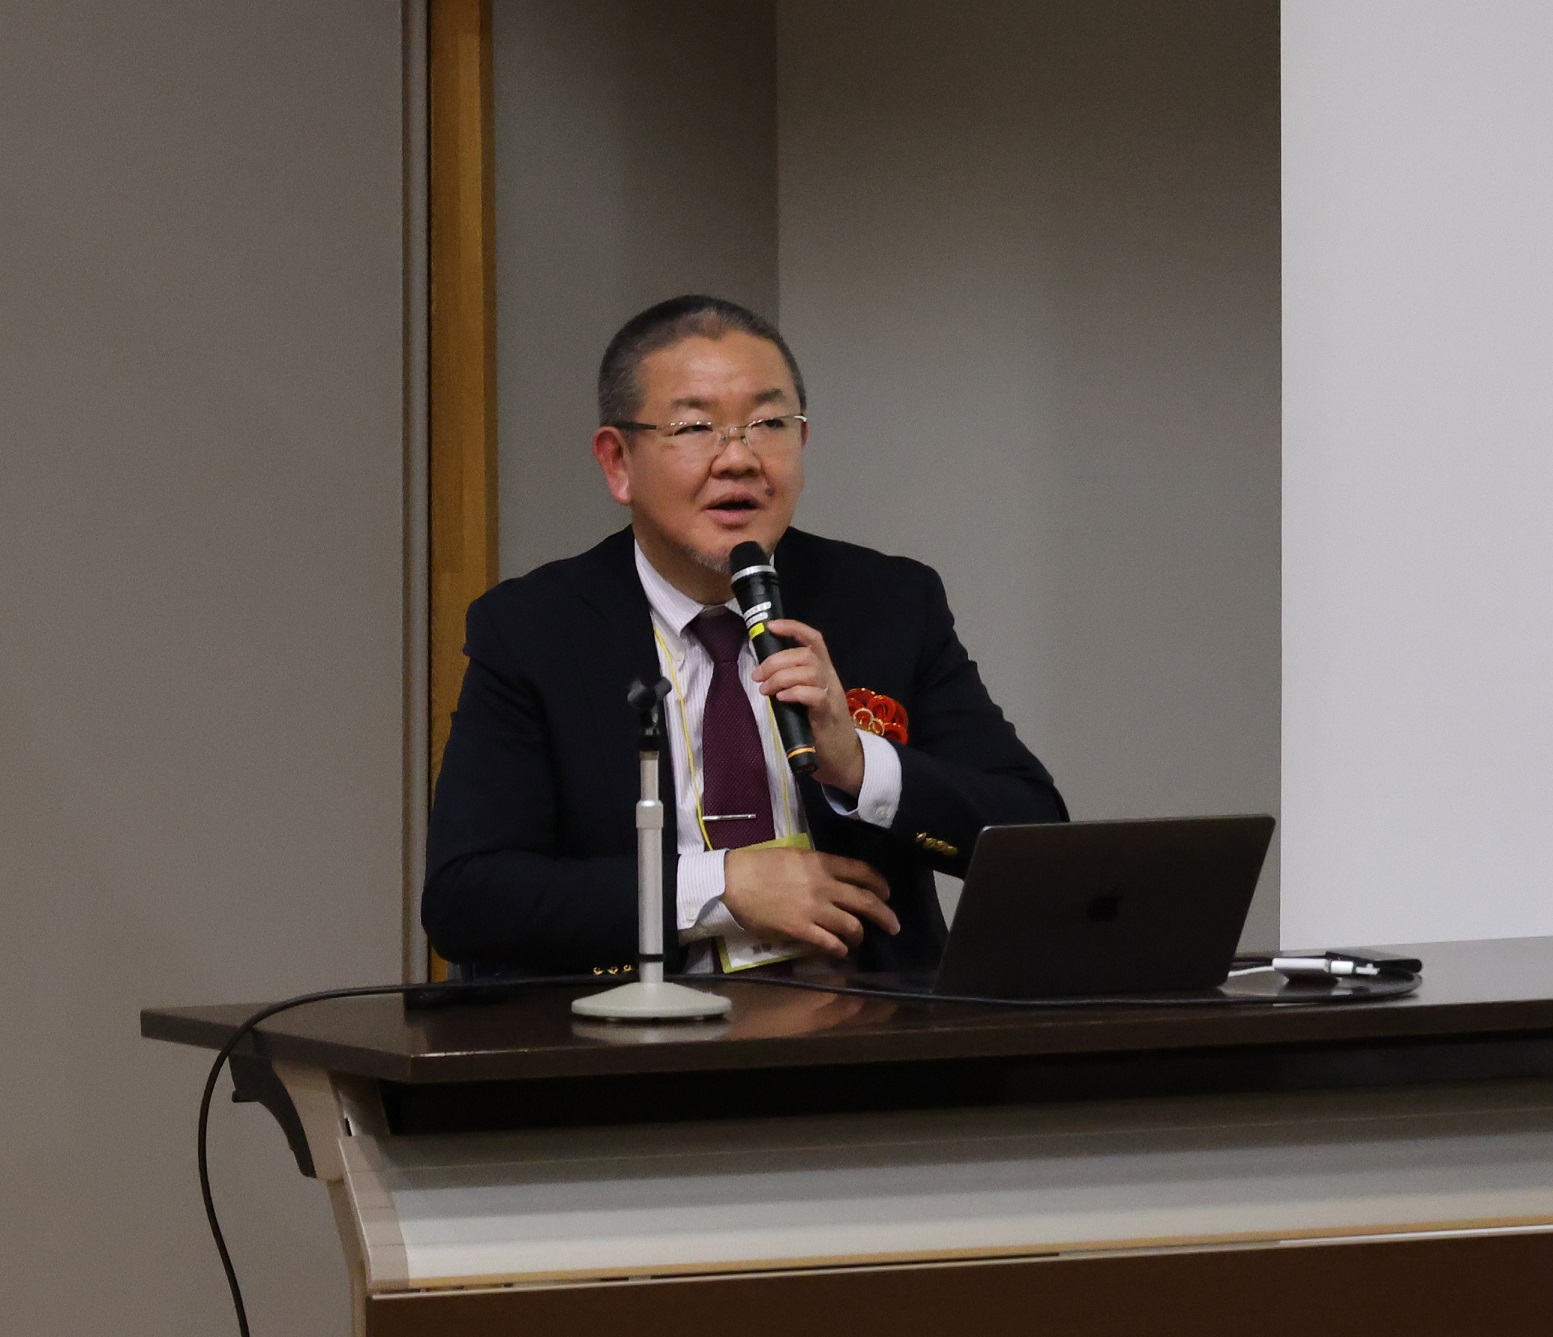 東京慈恵会医科大学 嘉糠洋陸 教授による特別講演「生物機能を活用した難治性疾患治療の新時代」